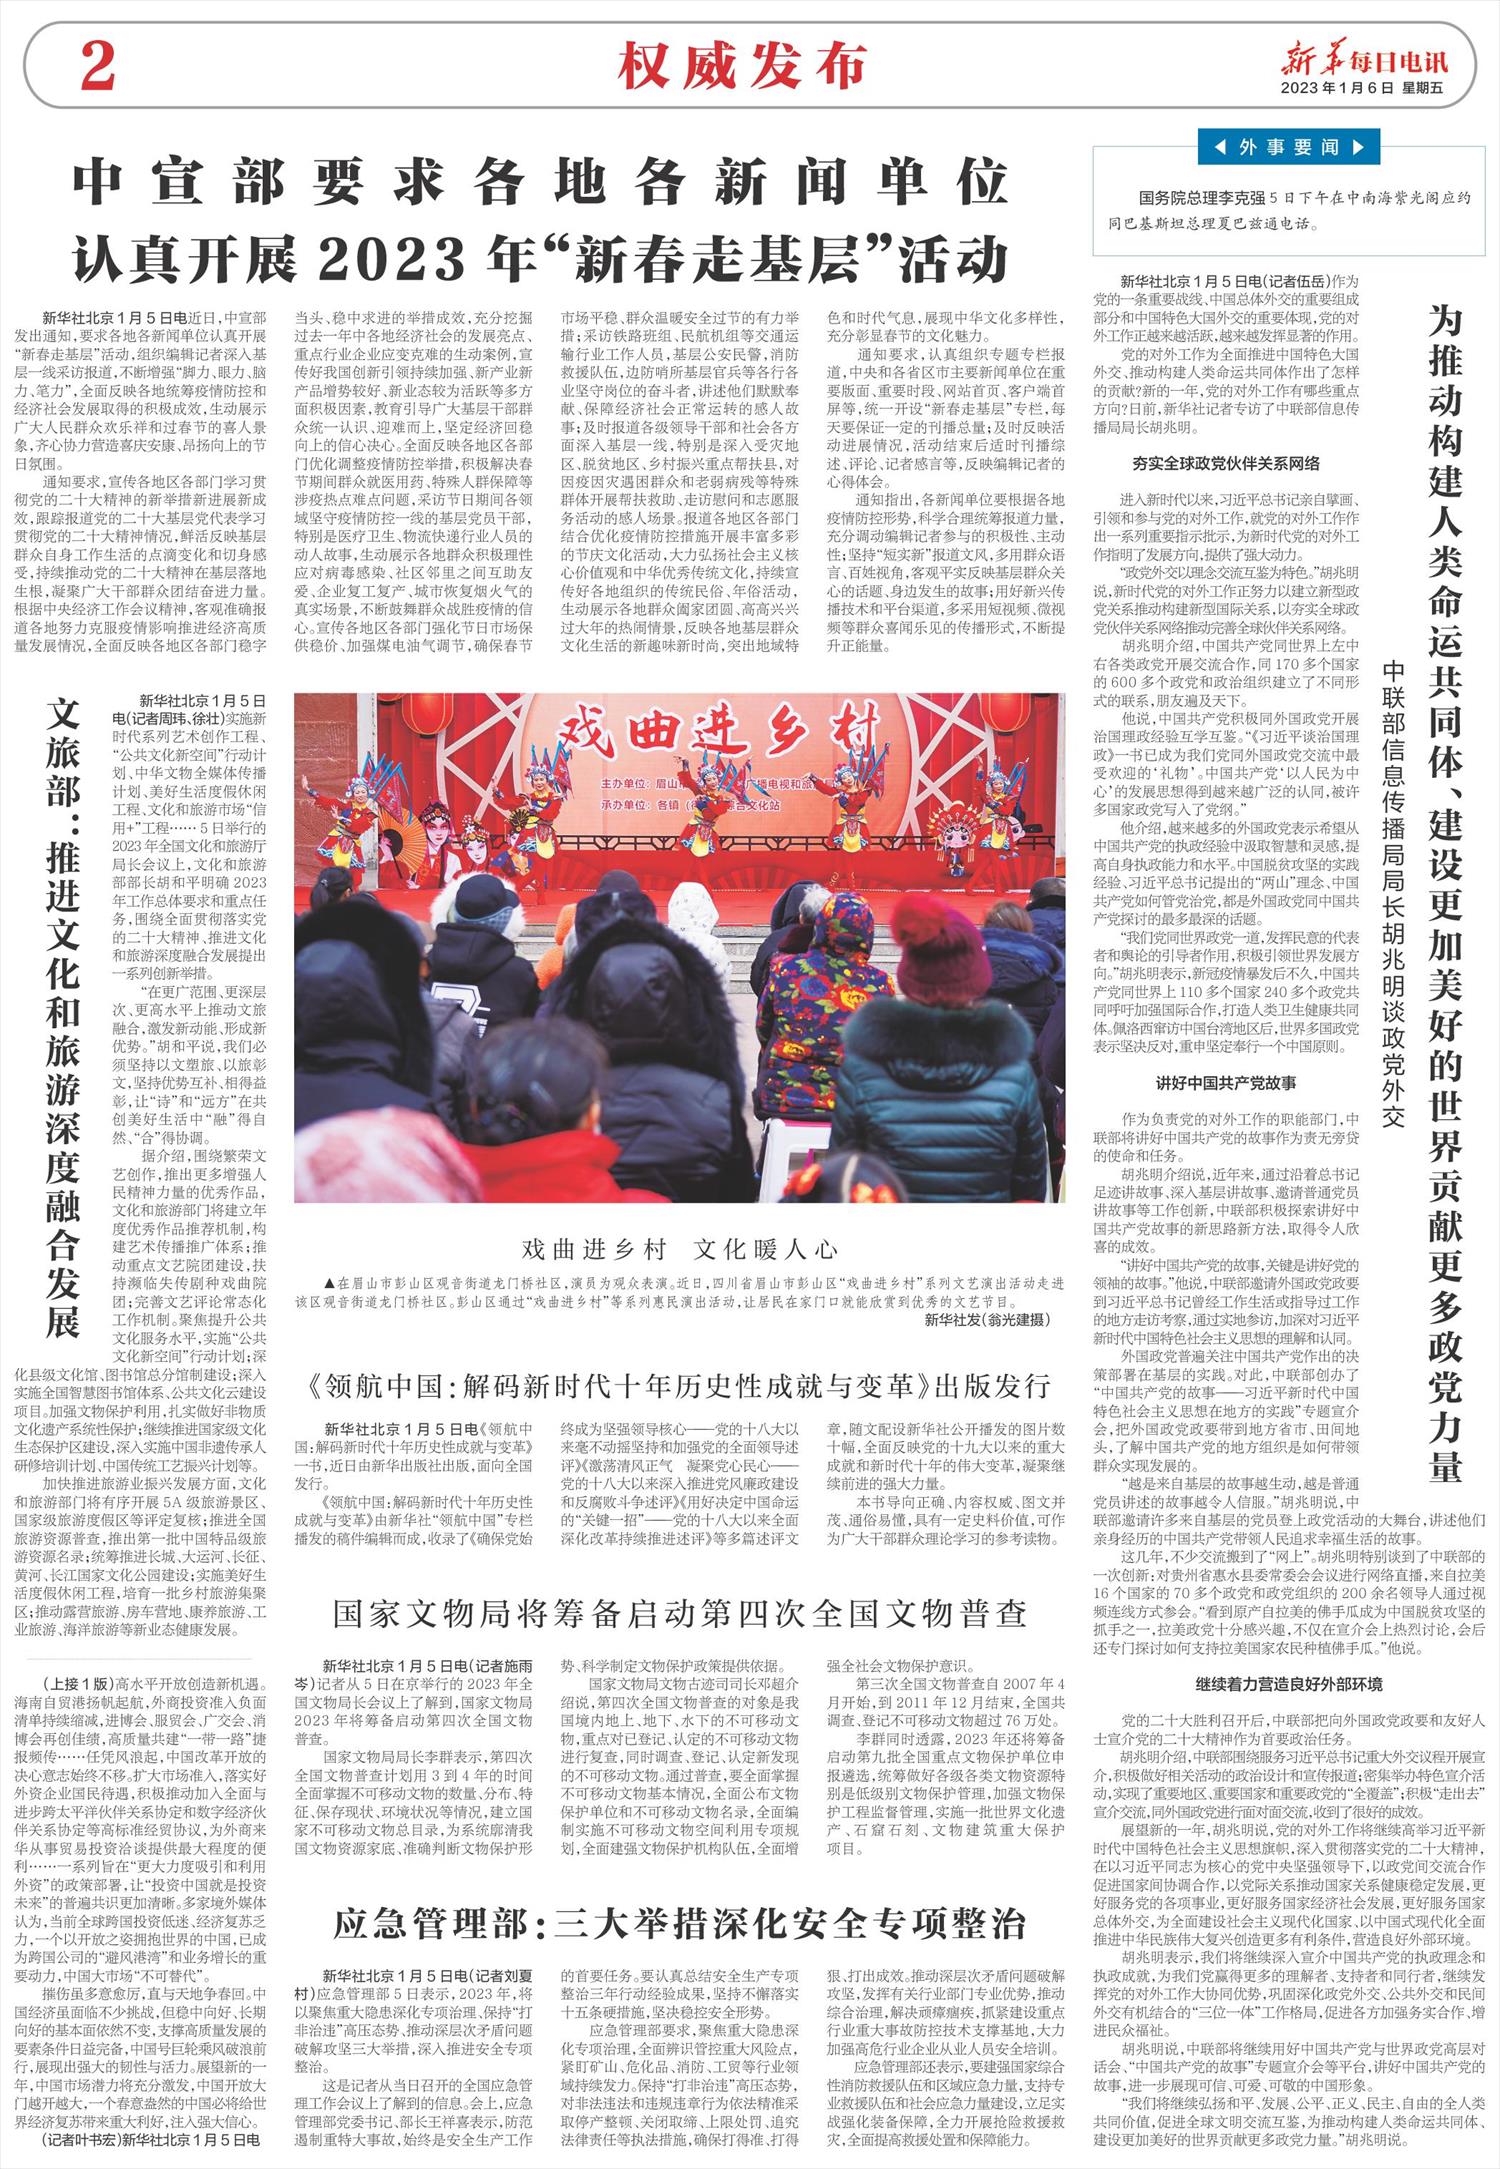 新华每日电讯-微报纸-2023年01月06日